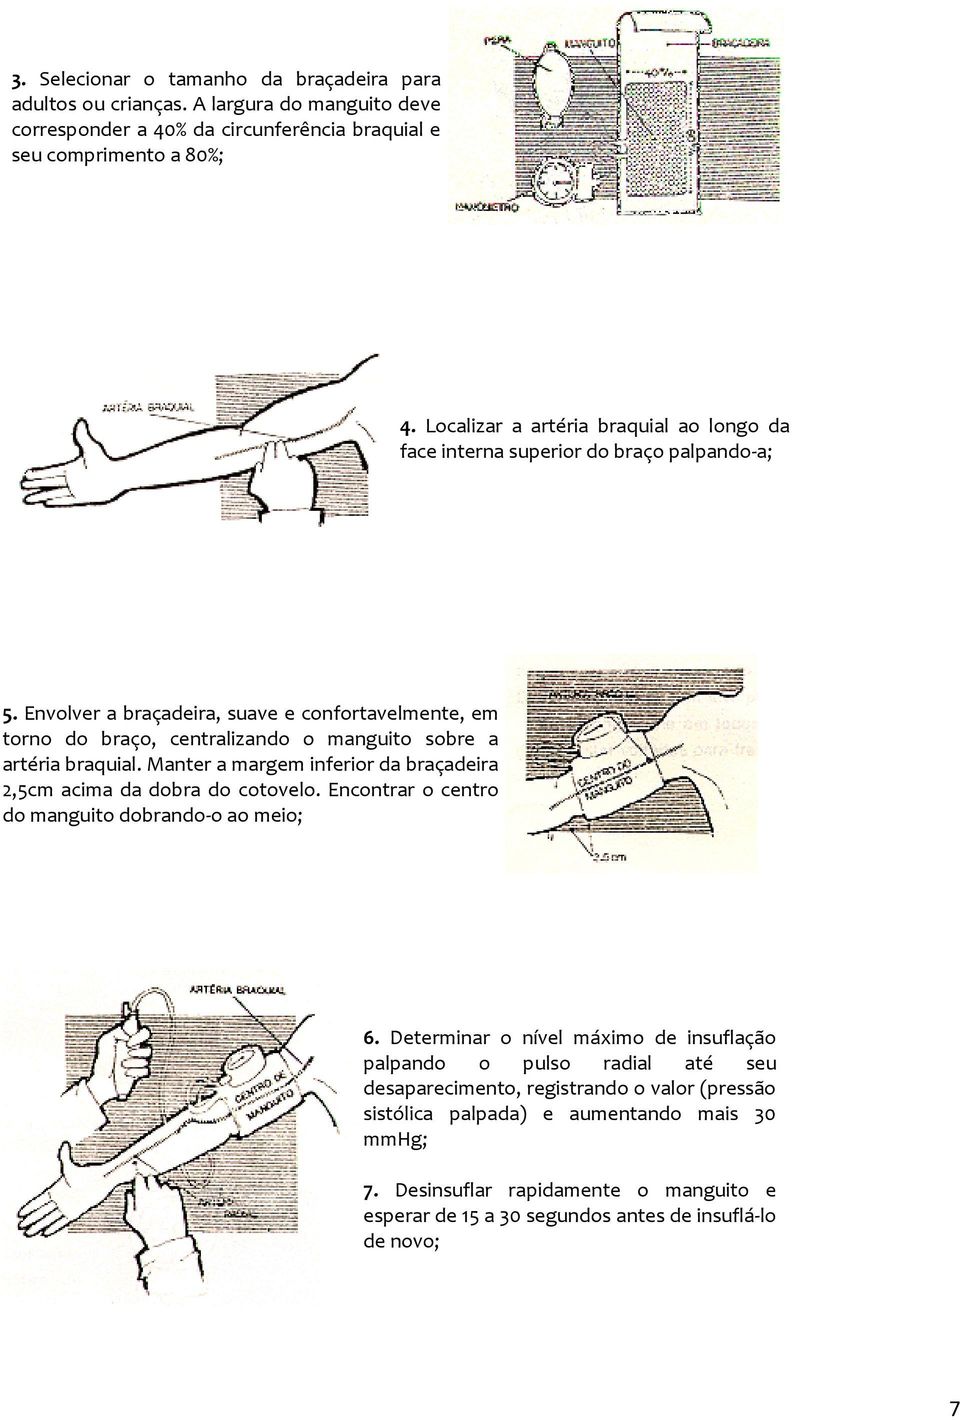 Envolver a braçadeira, suave e confortavelmente, em torno do braço, centralizando o manguito sobre a artéria braquial.